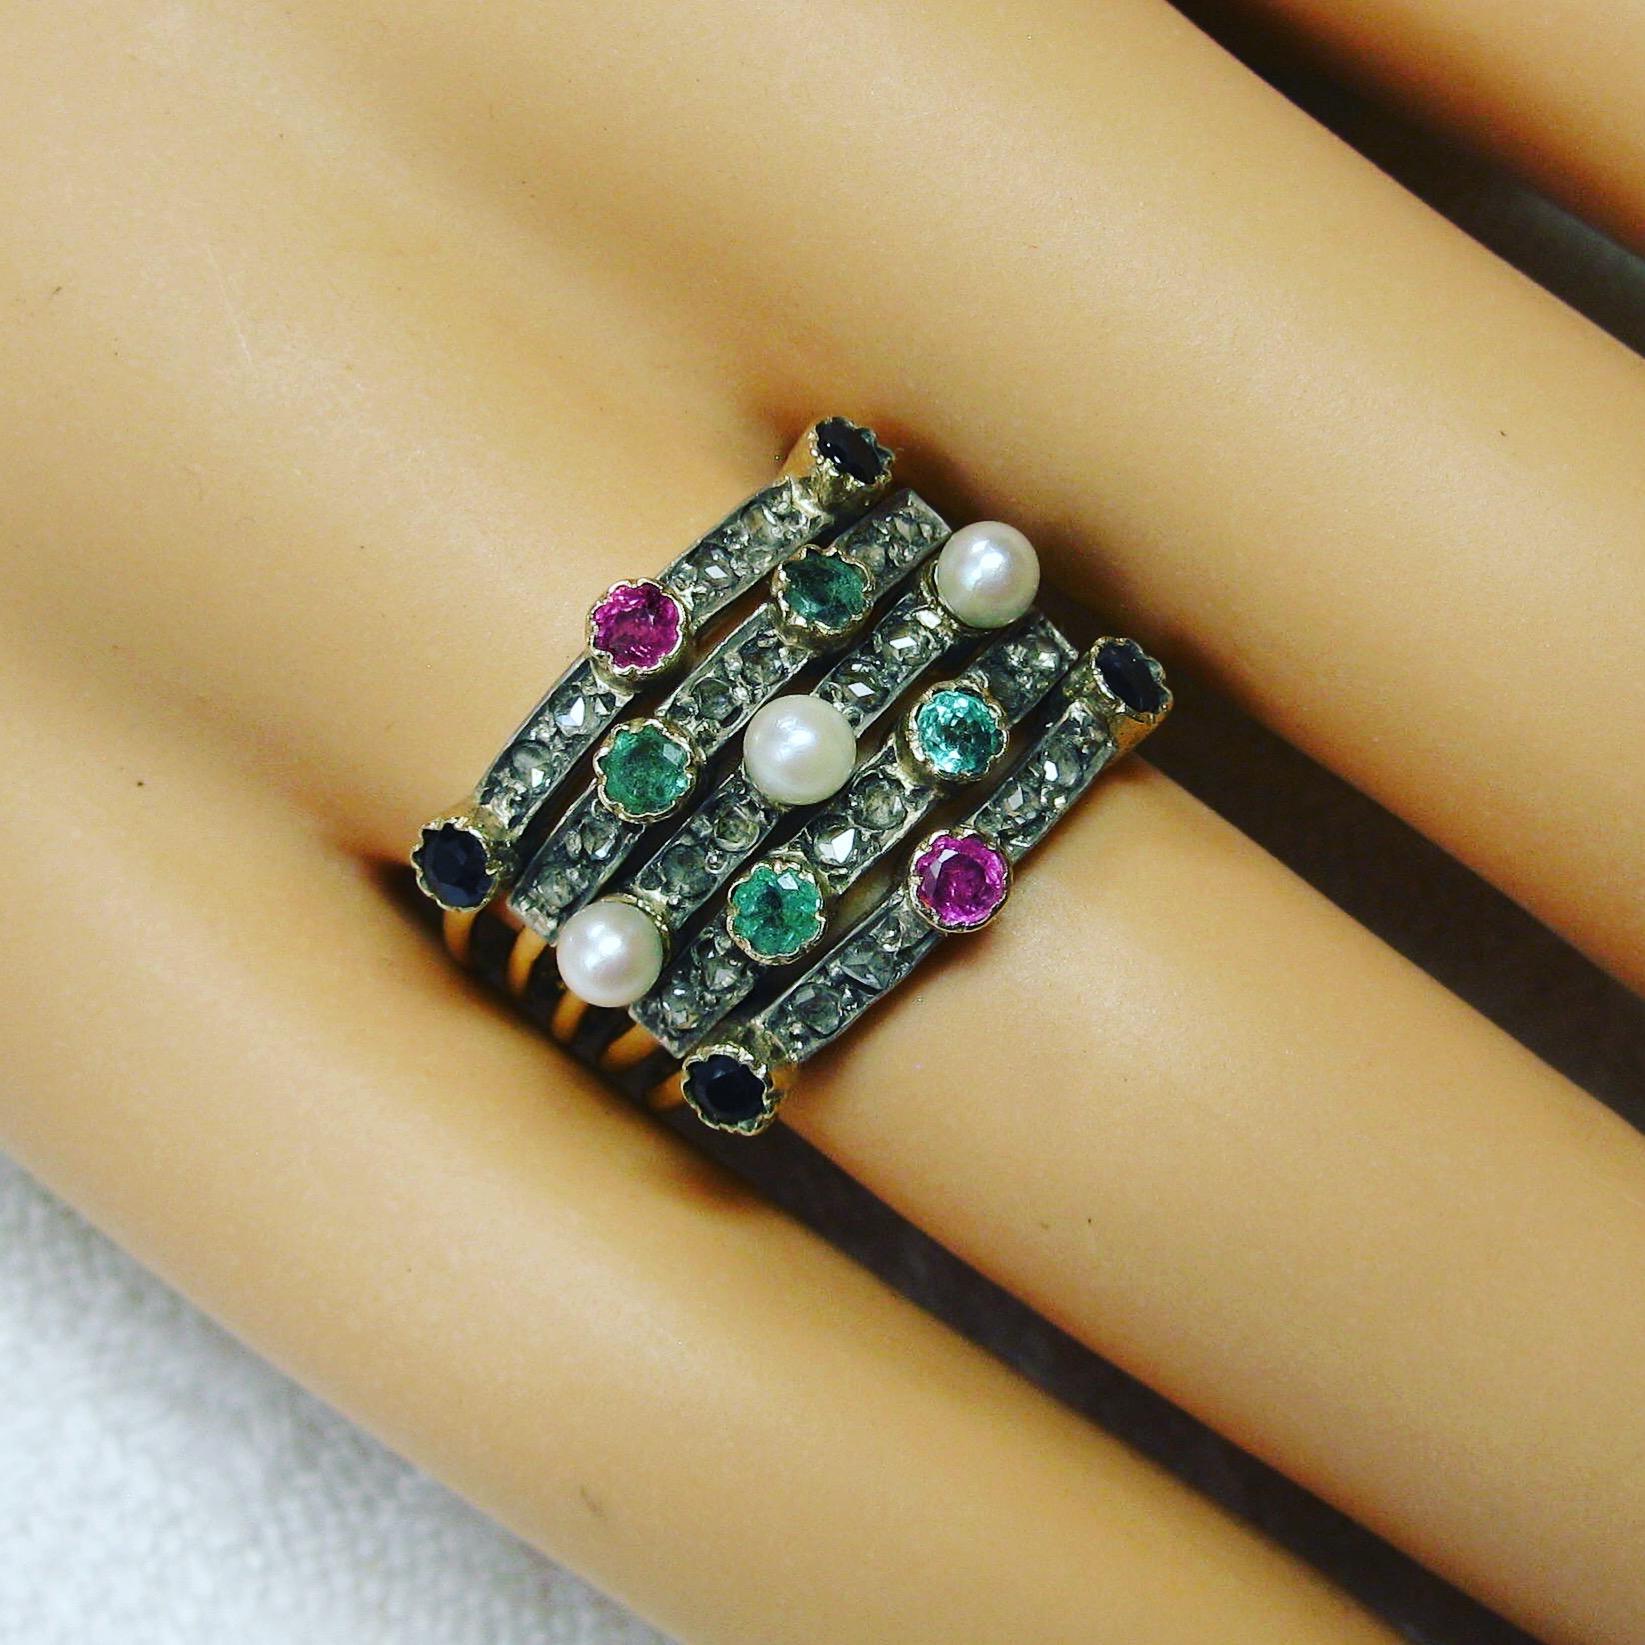 Dies ist eine spektakuläre antike Harem Ring mit fünf Stapeln Bands mit 24 funkelnden Rose Cut Diamanten, Smaragde, Saphire, Rubine und Perlen in 14 Karat Gold.  Der Ring ist ein sehr begehrtes und sehr schwer zu findendes Schmuckstück.  Der Ring